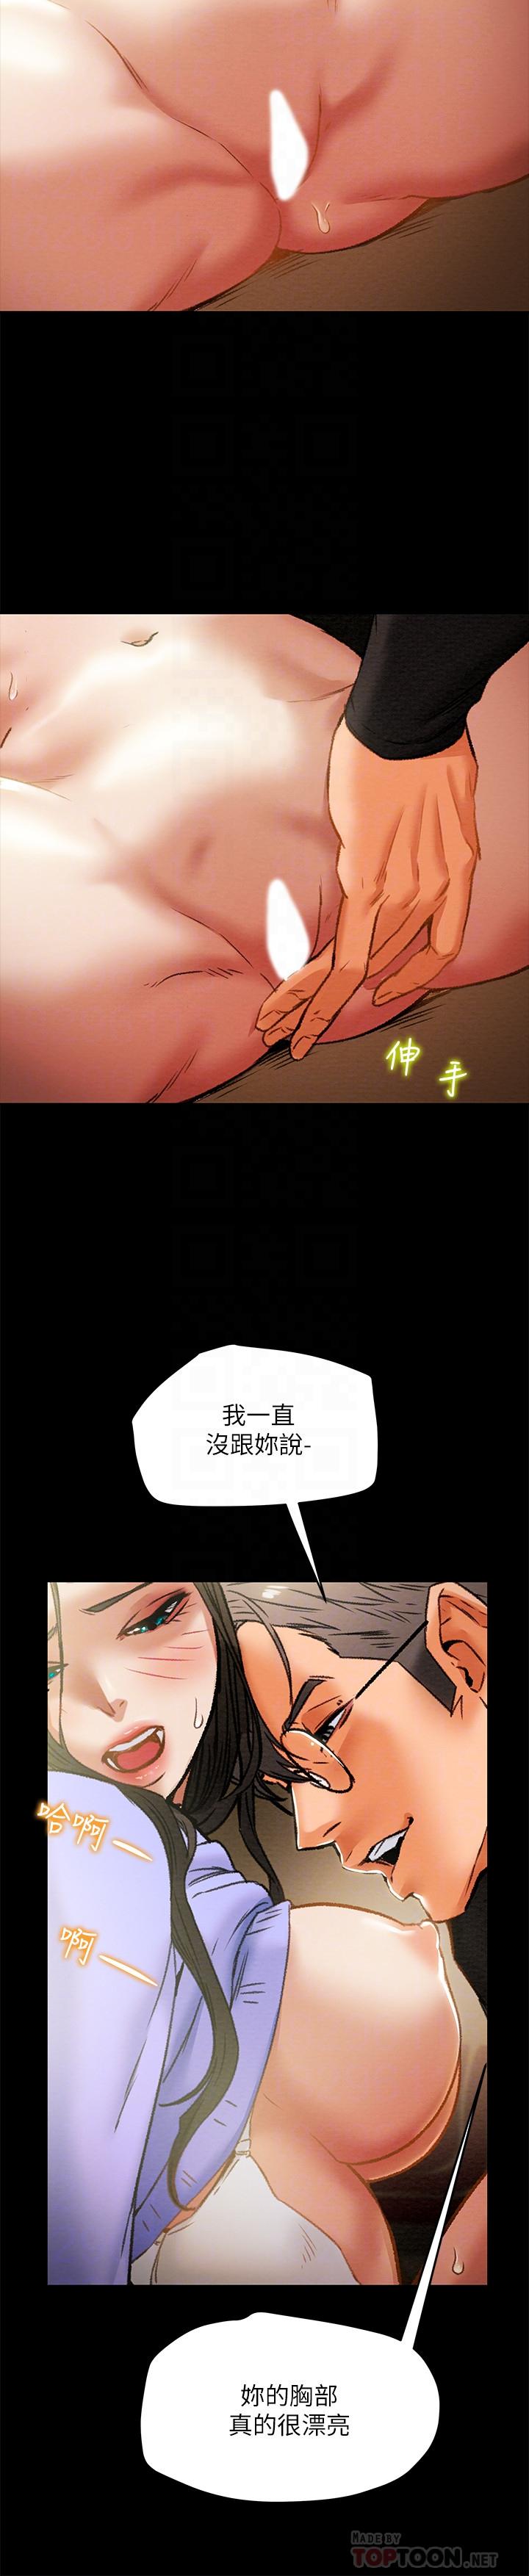 韩国污漫画 純情女攻略計劃 第20话-越来越湿的小穴 14